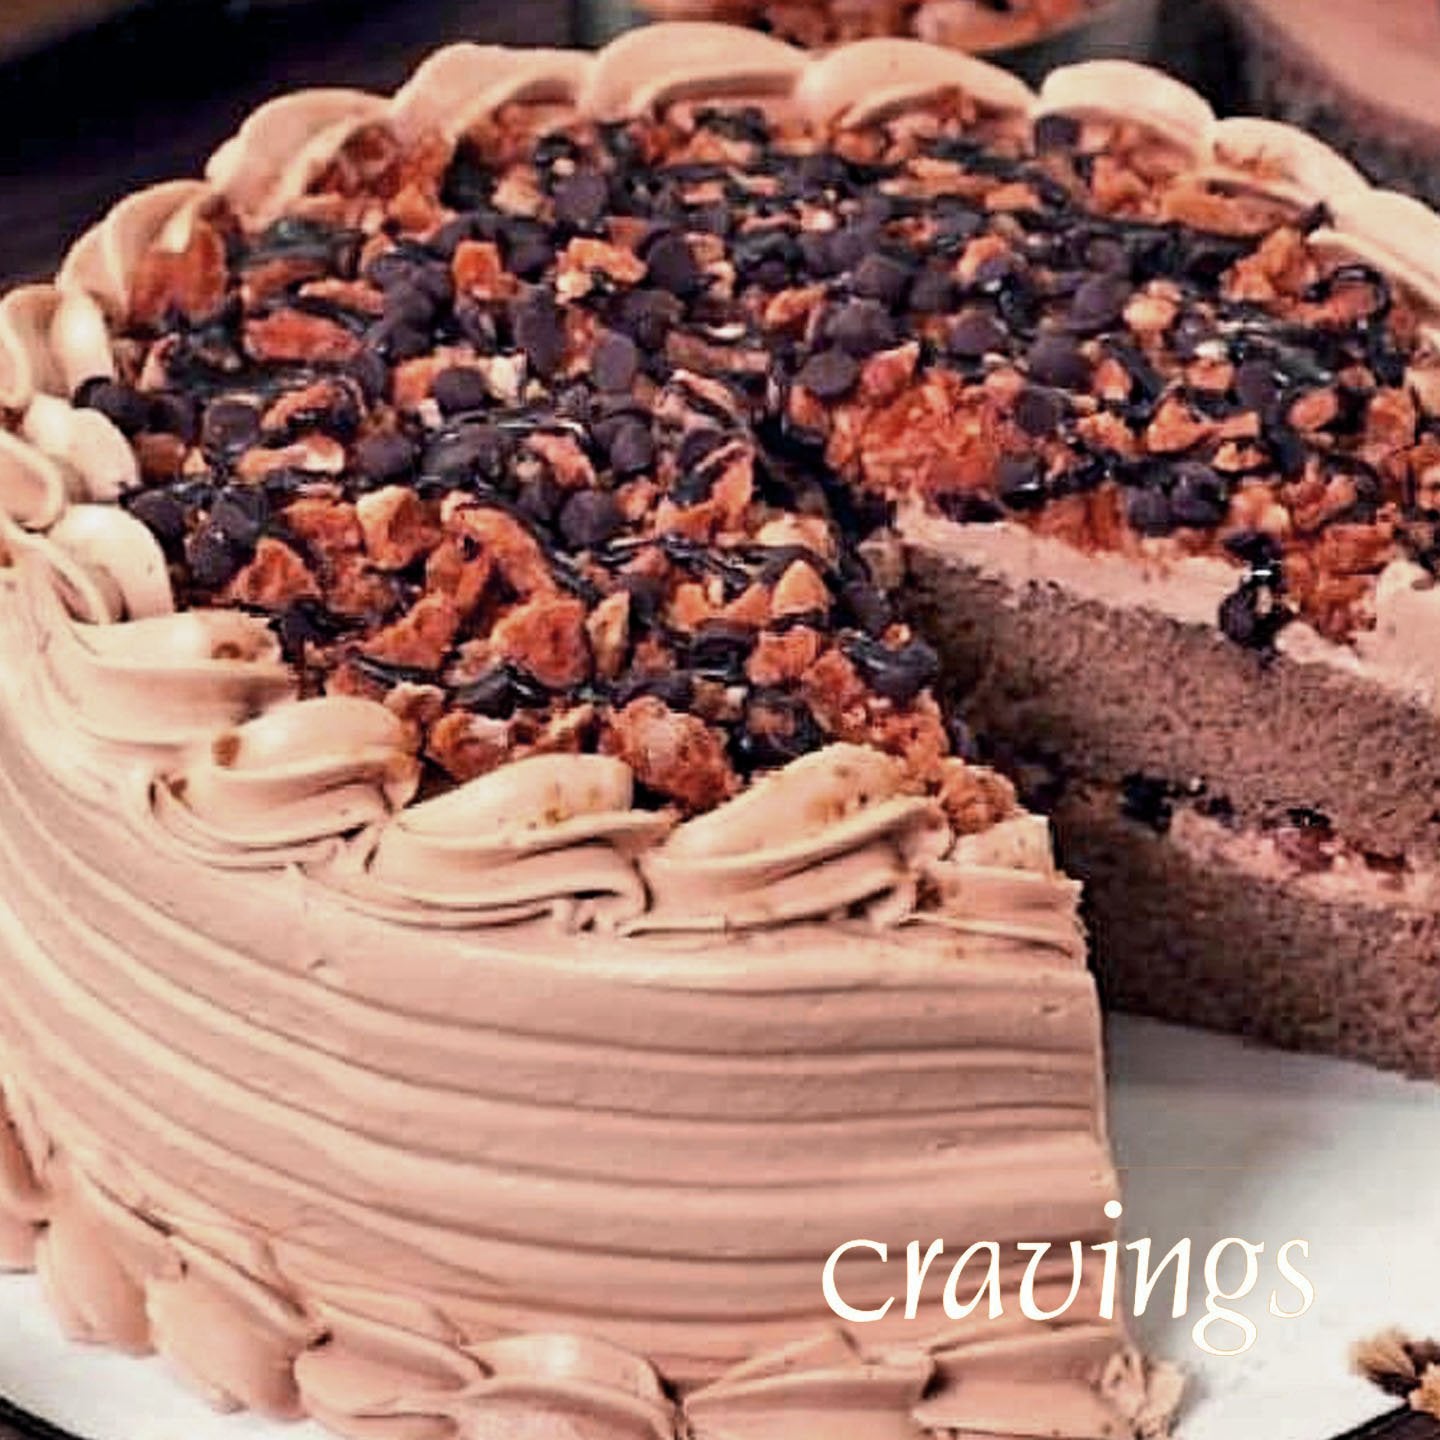 Chocolate Hazelnut Praline Crunch Cake - Bryony's Bakes